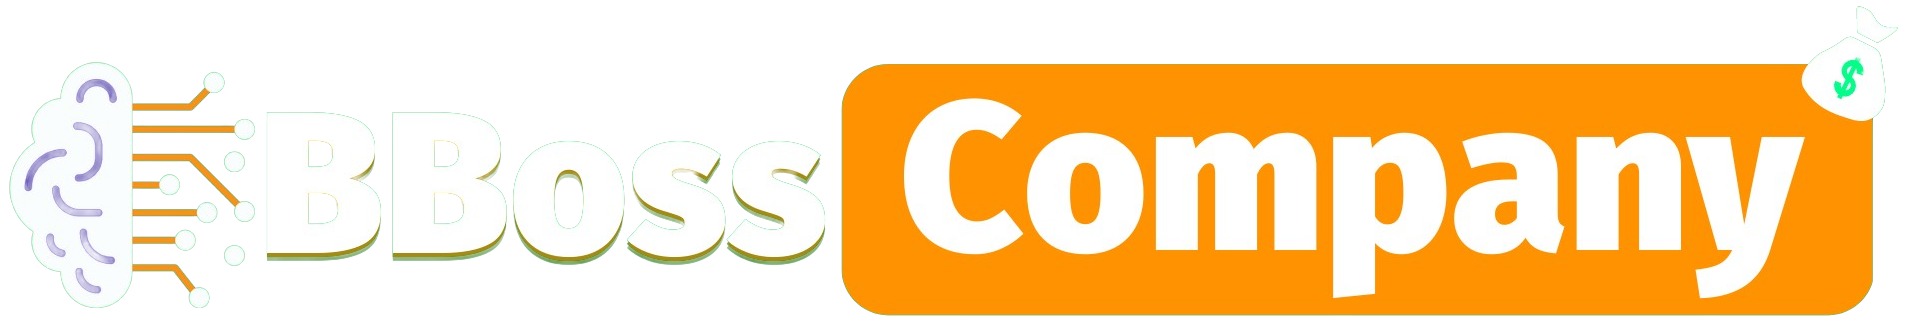 BBoss Company Logo